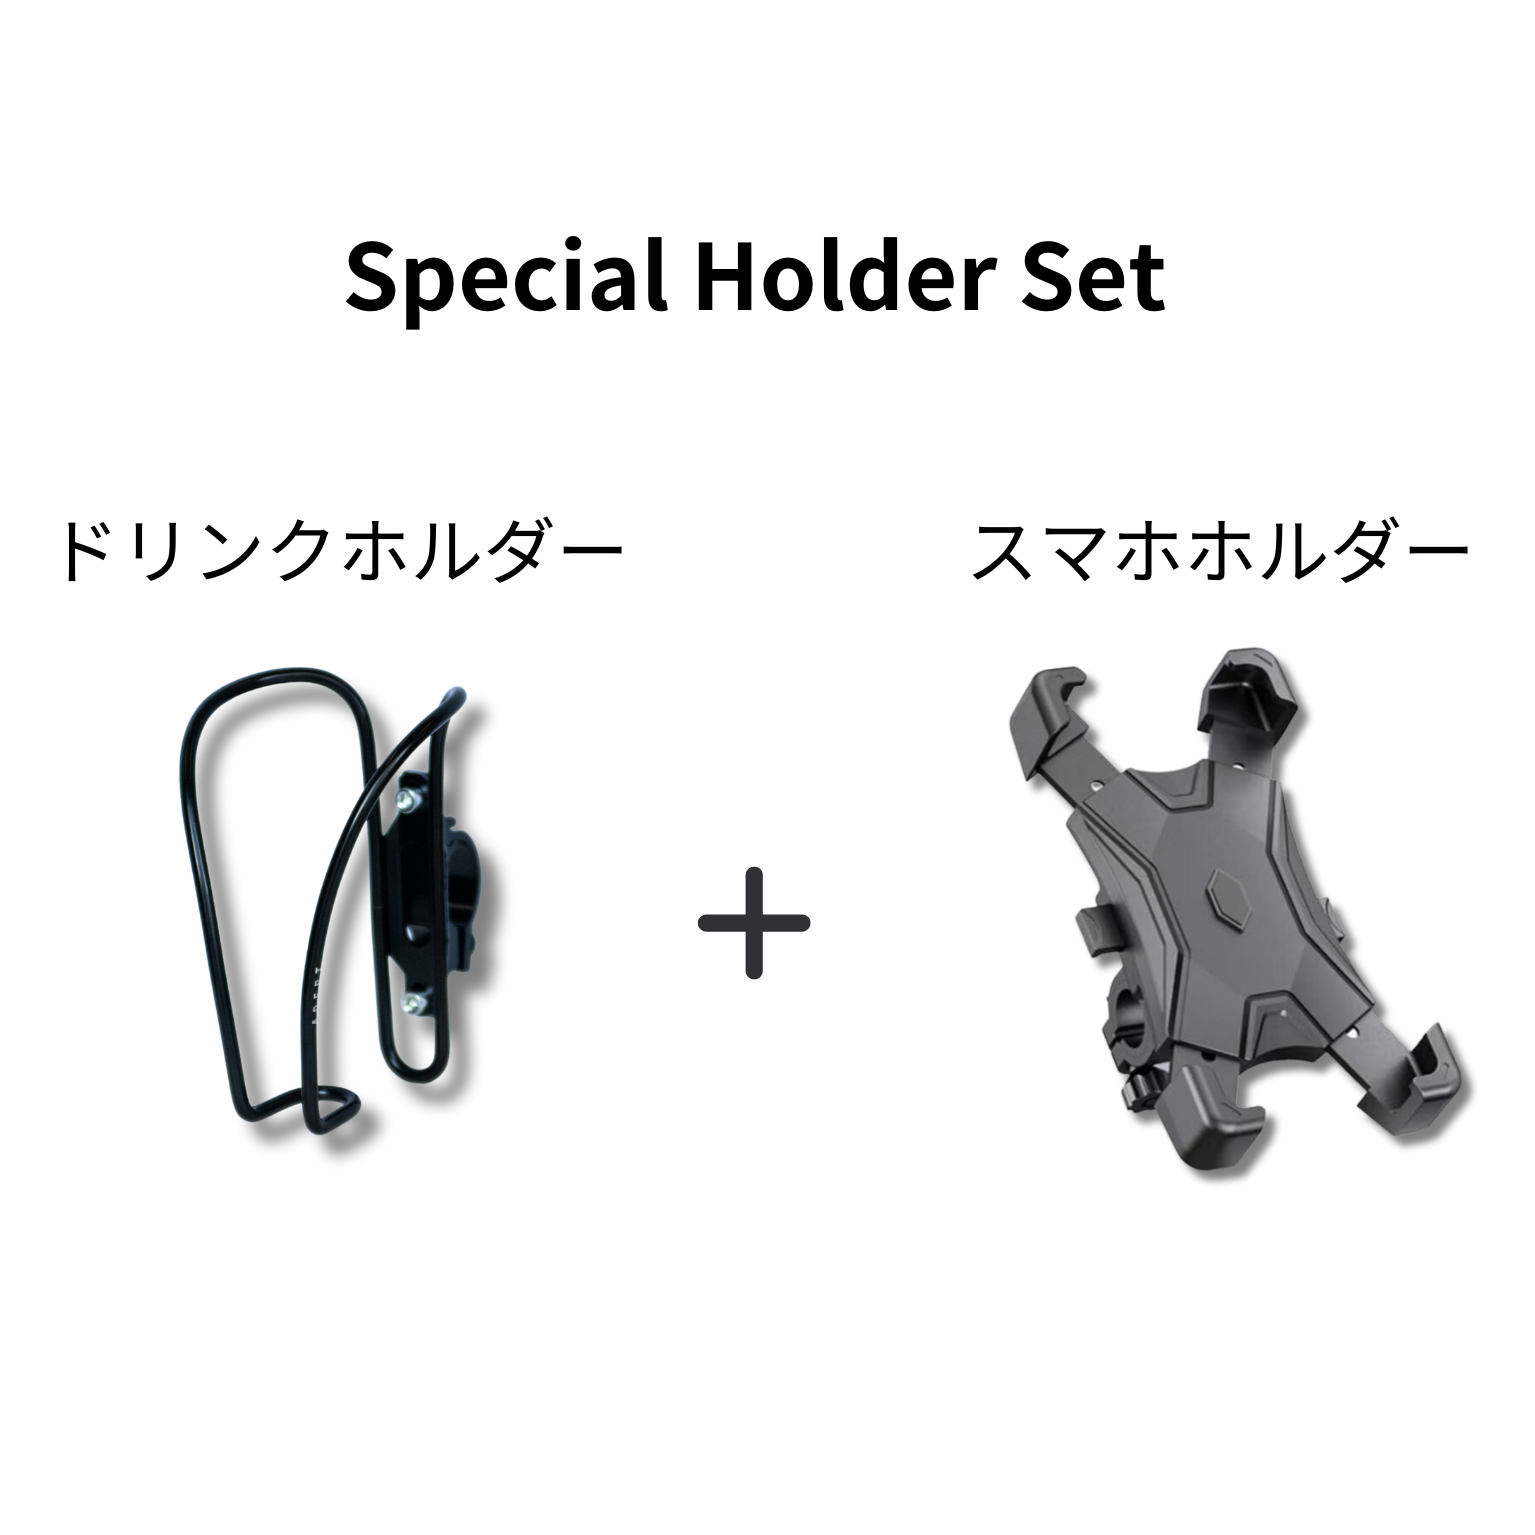 Special Holder Set